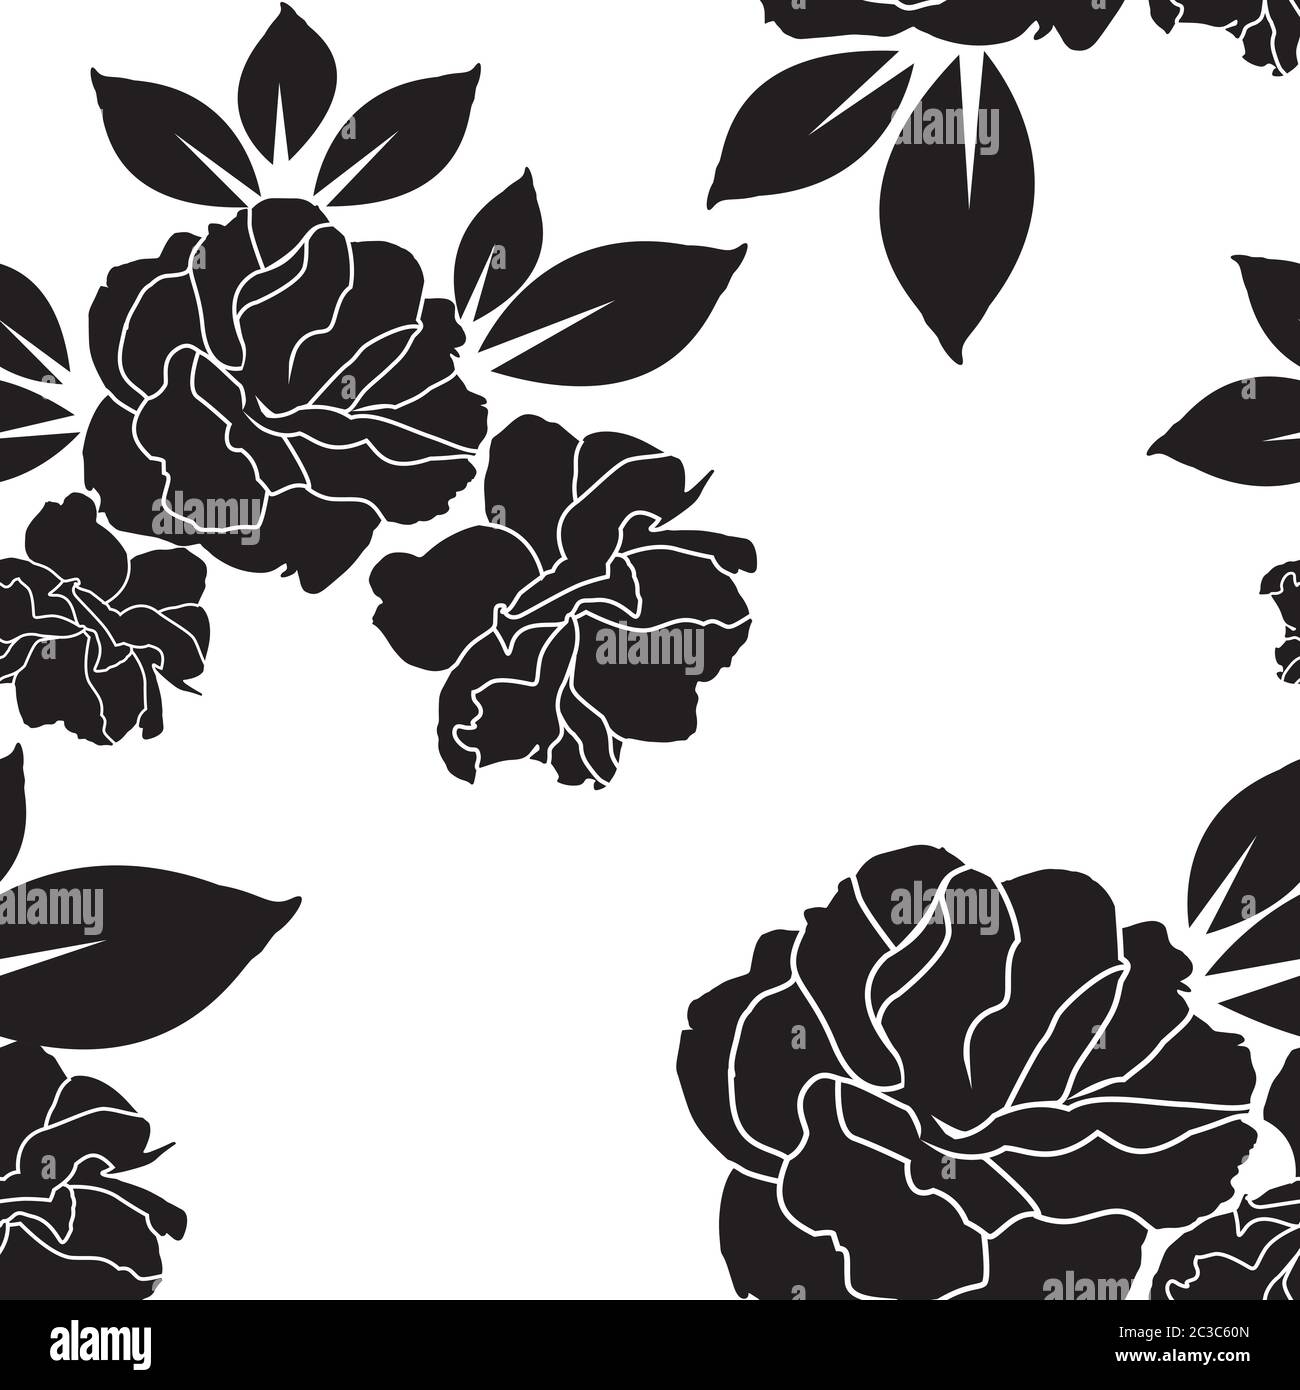 Rose schwarz und weiß Tapete oder Textil nahtlose Muster-Design  Stock-Vektorgrafik - Alamy